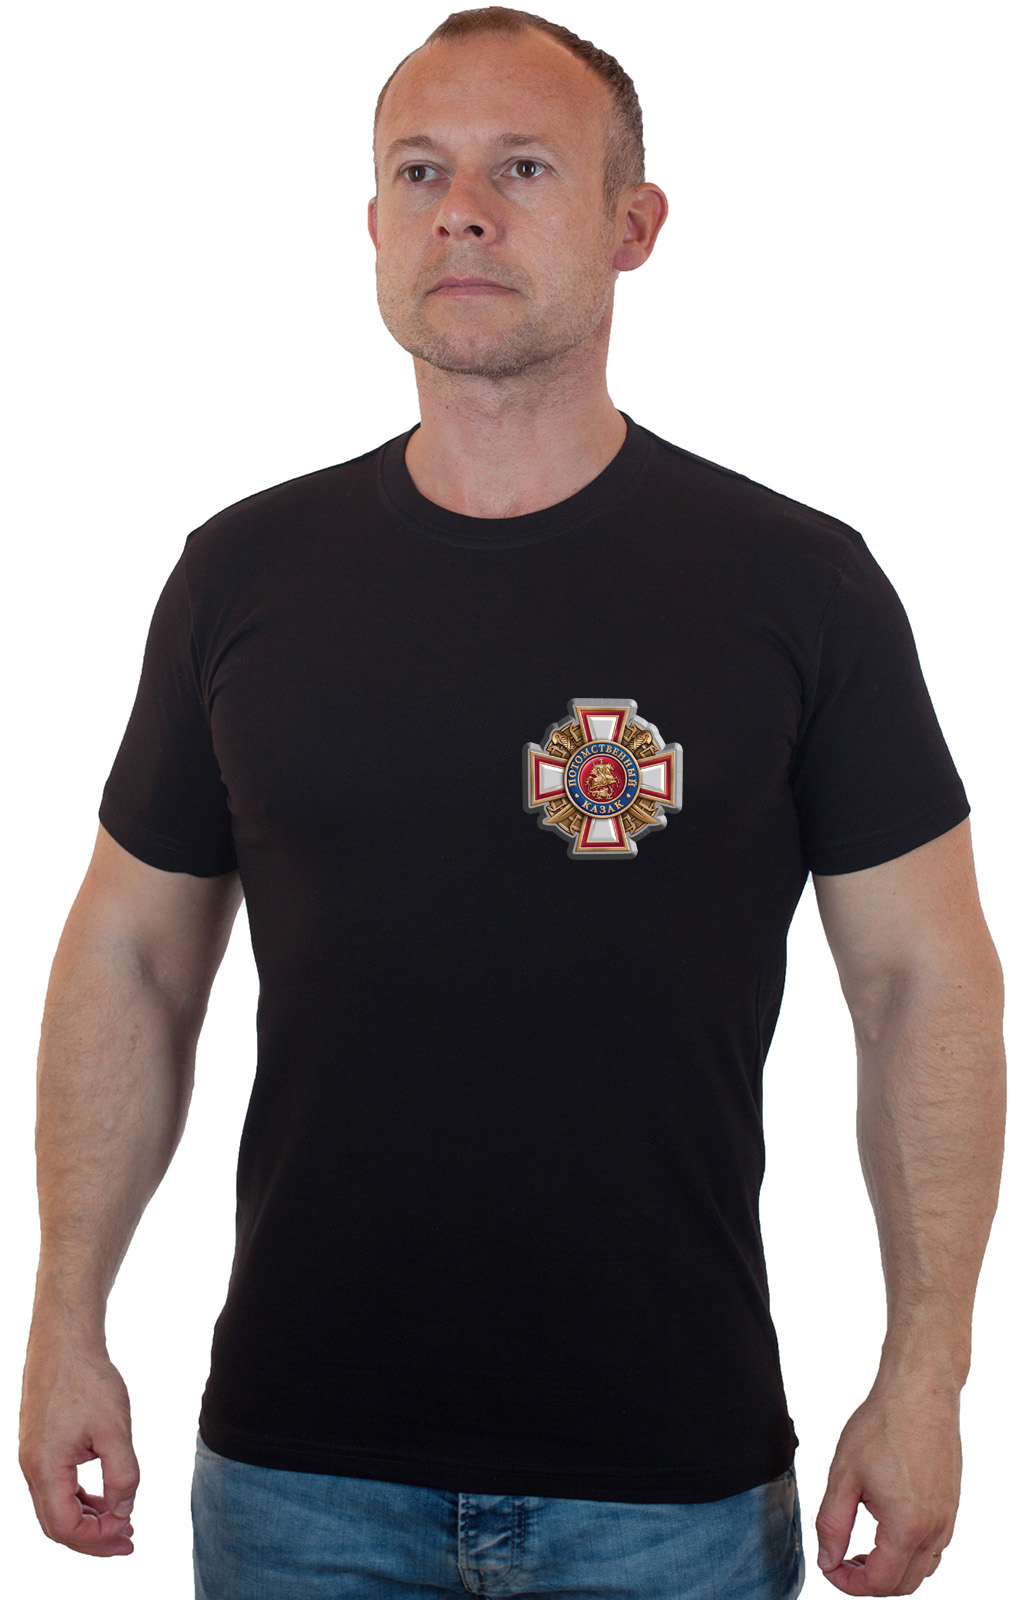 Мужская футболка с термотрансфером "Потомственный казак" 